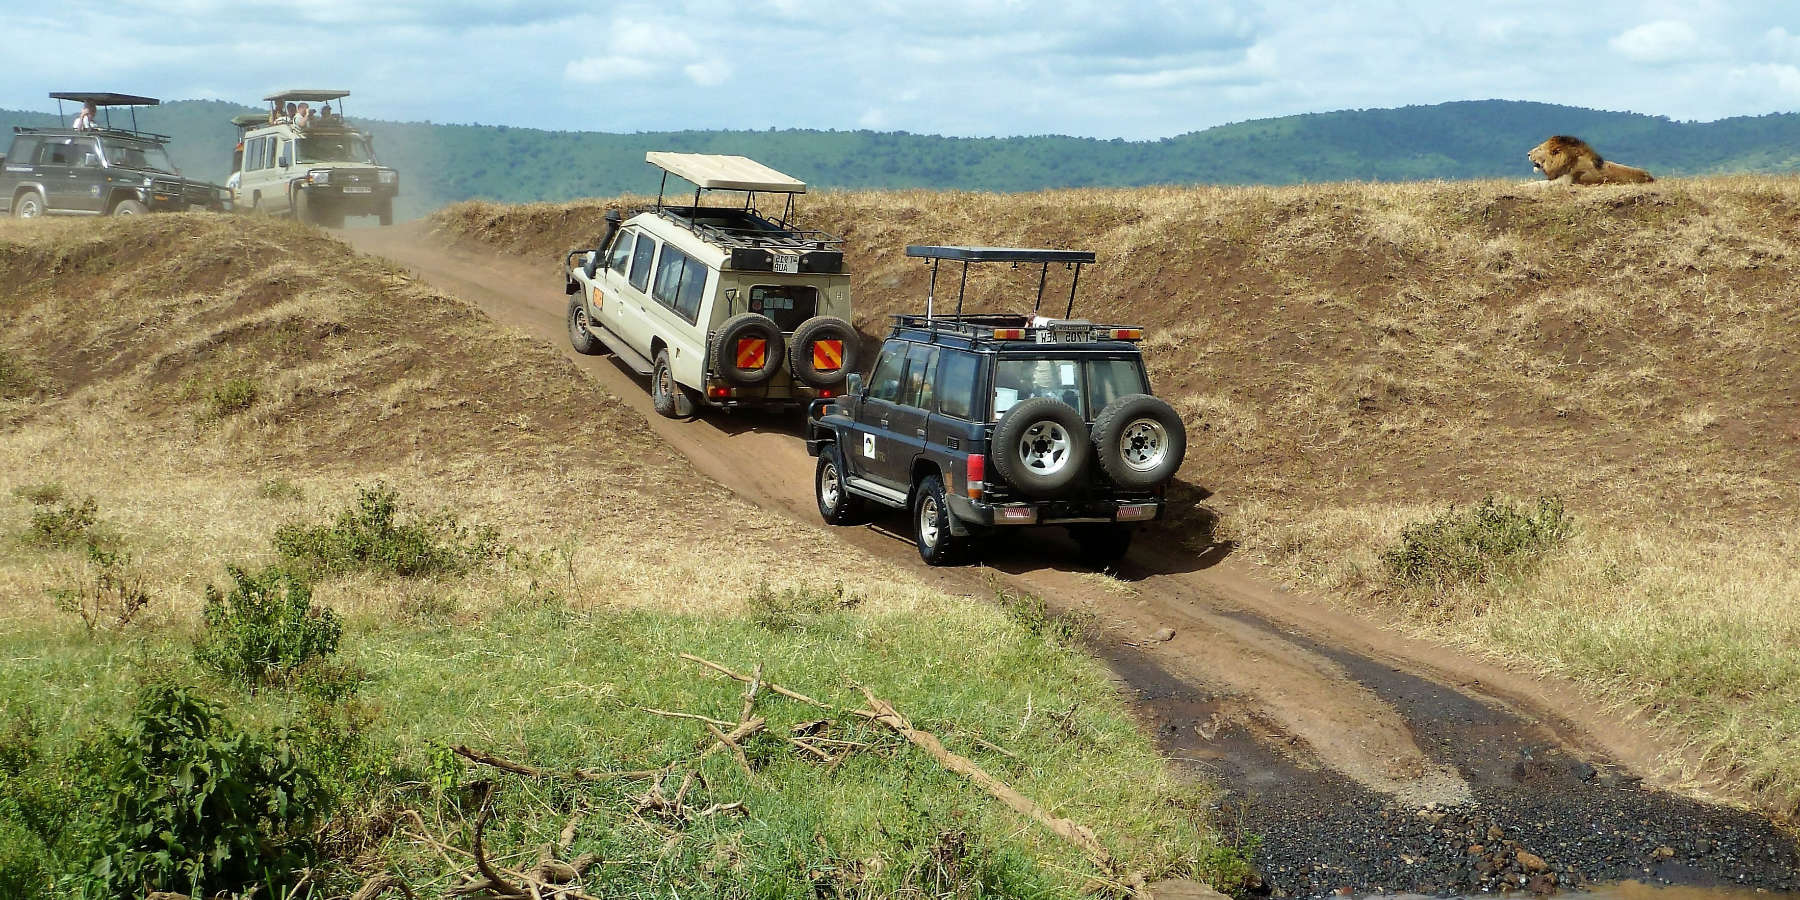 Geländewagen in Afrika neben einem Hügel, auf dem ein Löwe liegt